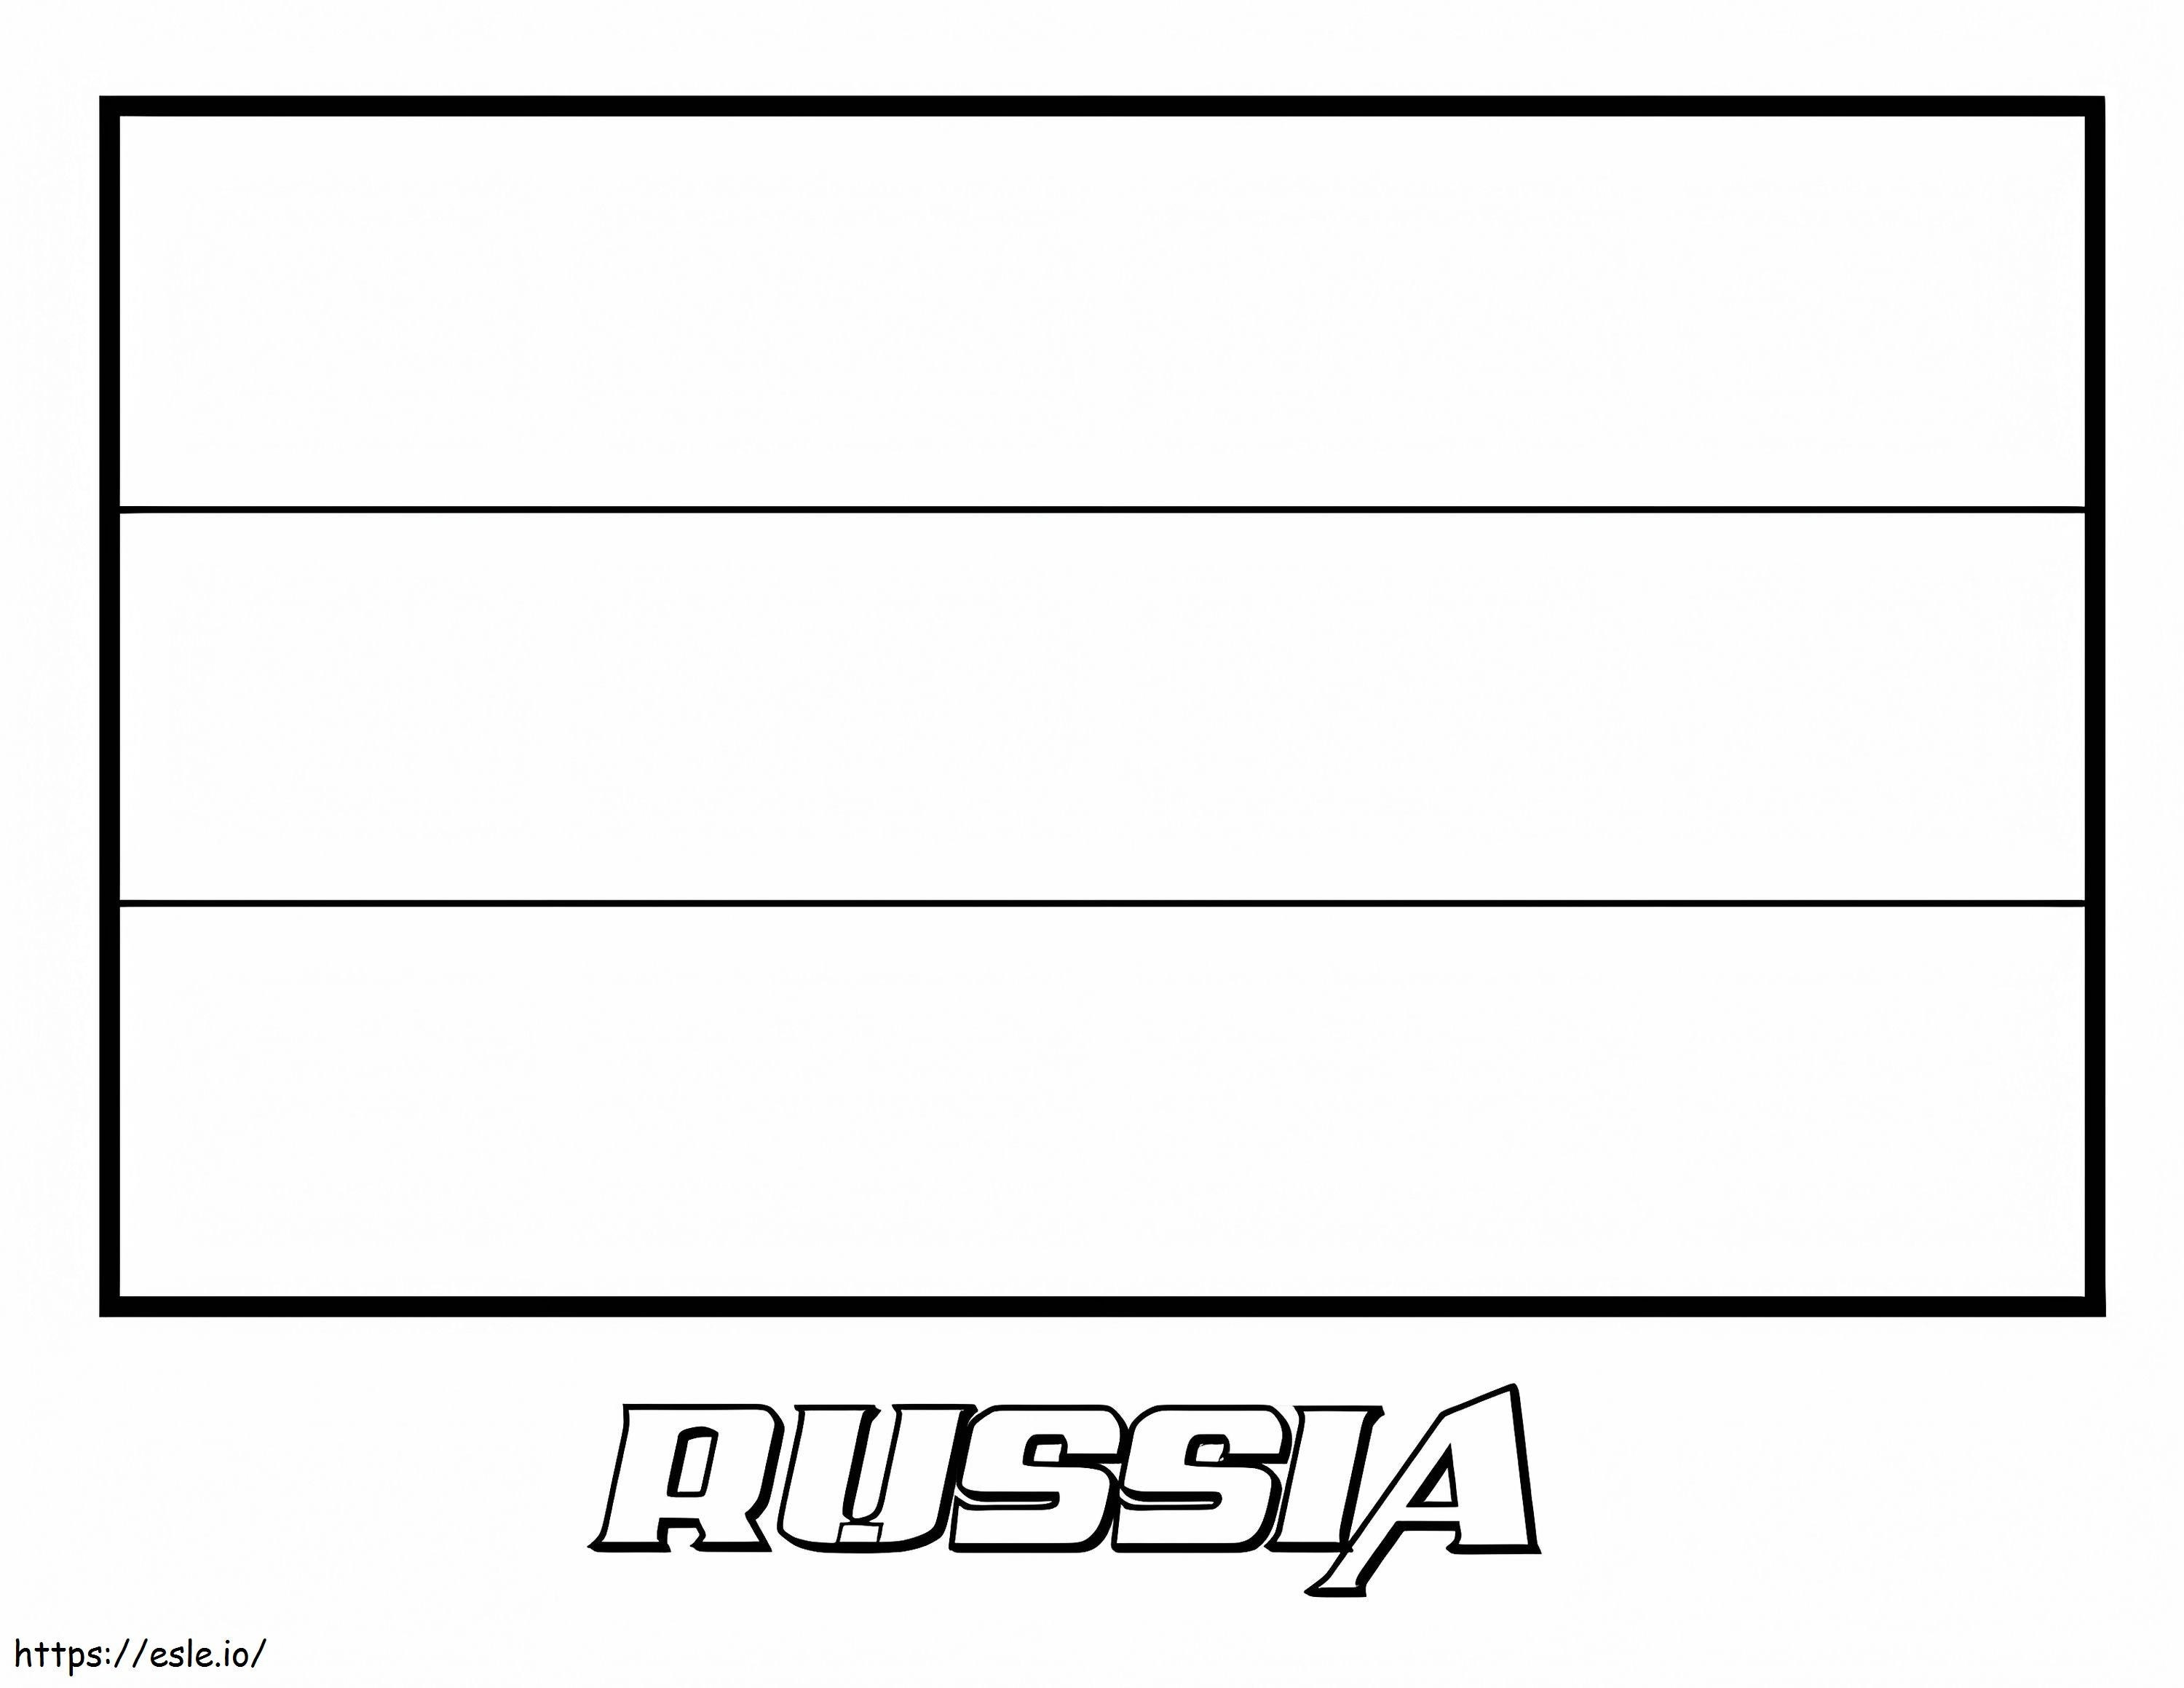 Oroszország zászló 1 kifestő